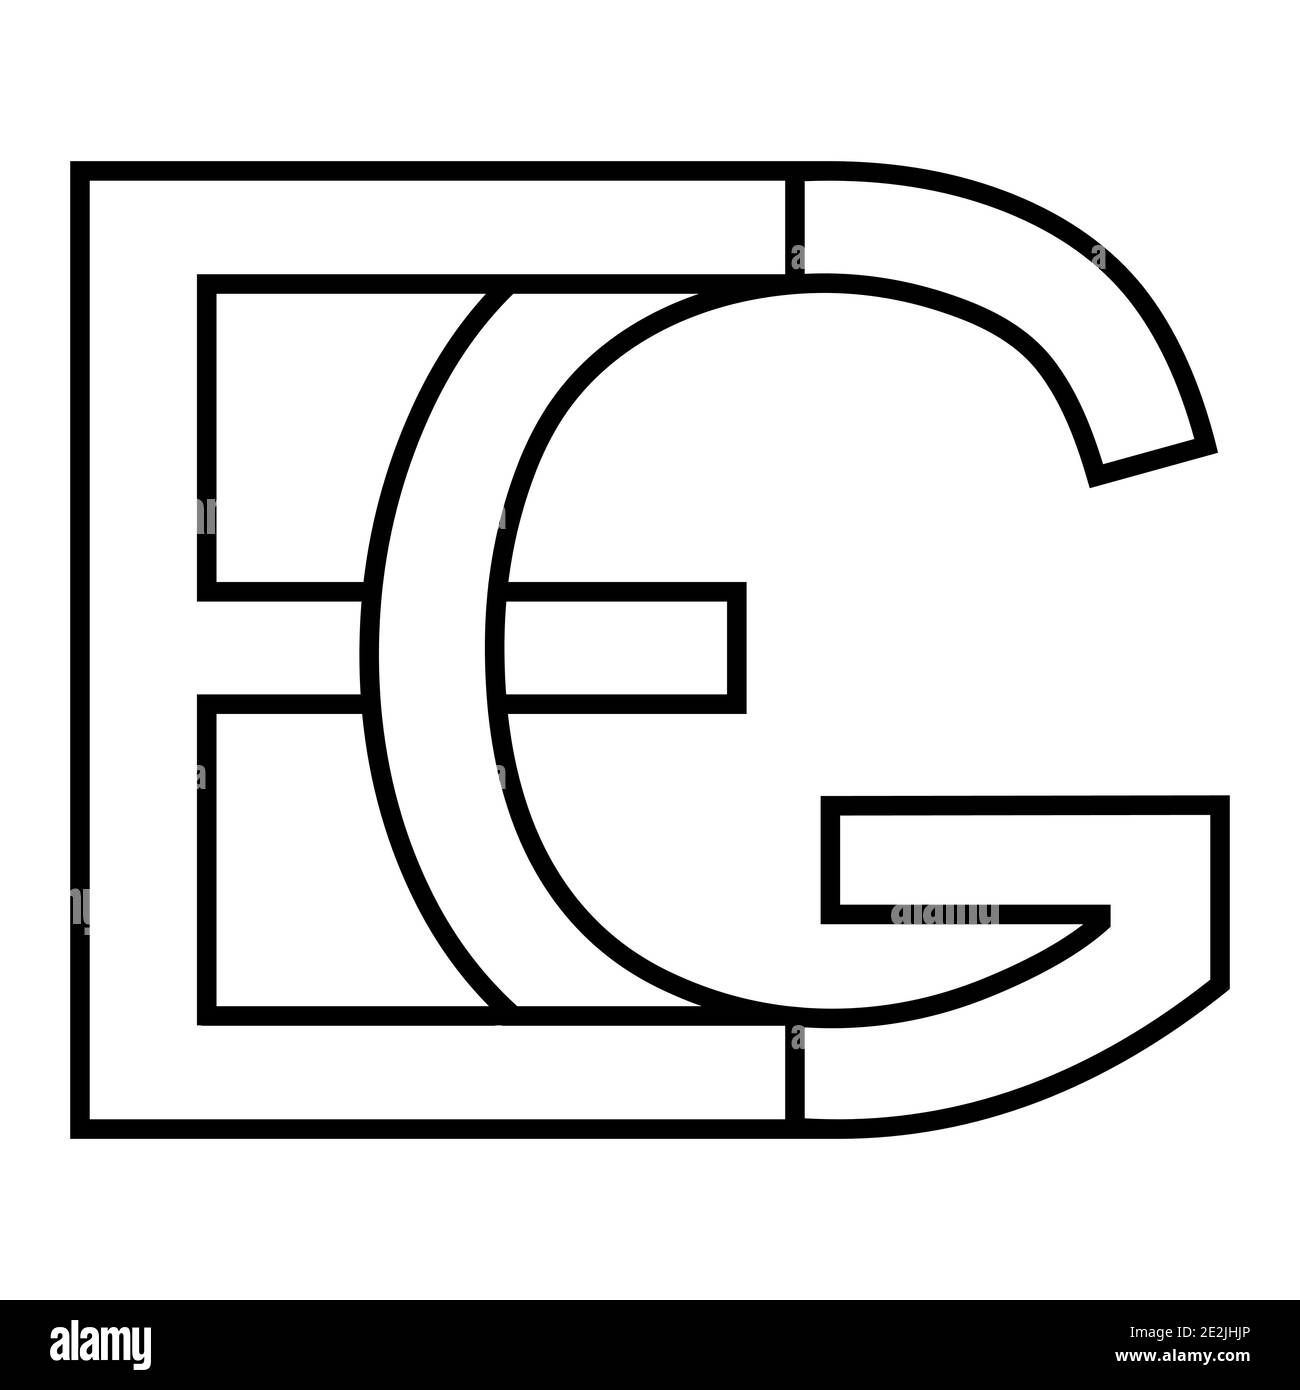 Signe du logo EG et signe de l'icône ge lettres entrelacées G, E logo vectoriel EG, ge premières lettres majuscules motif alphabet e, g Illustration de Vecteur